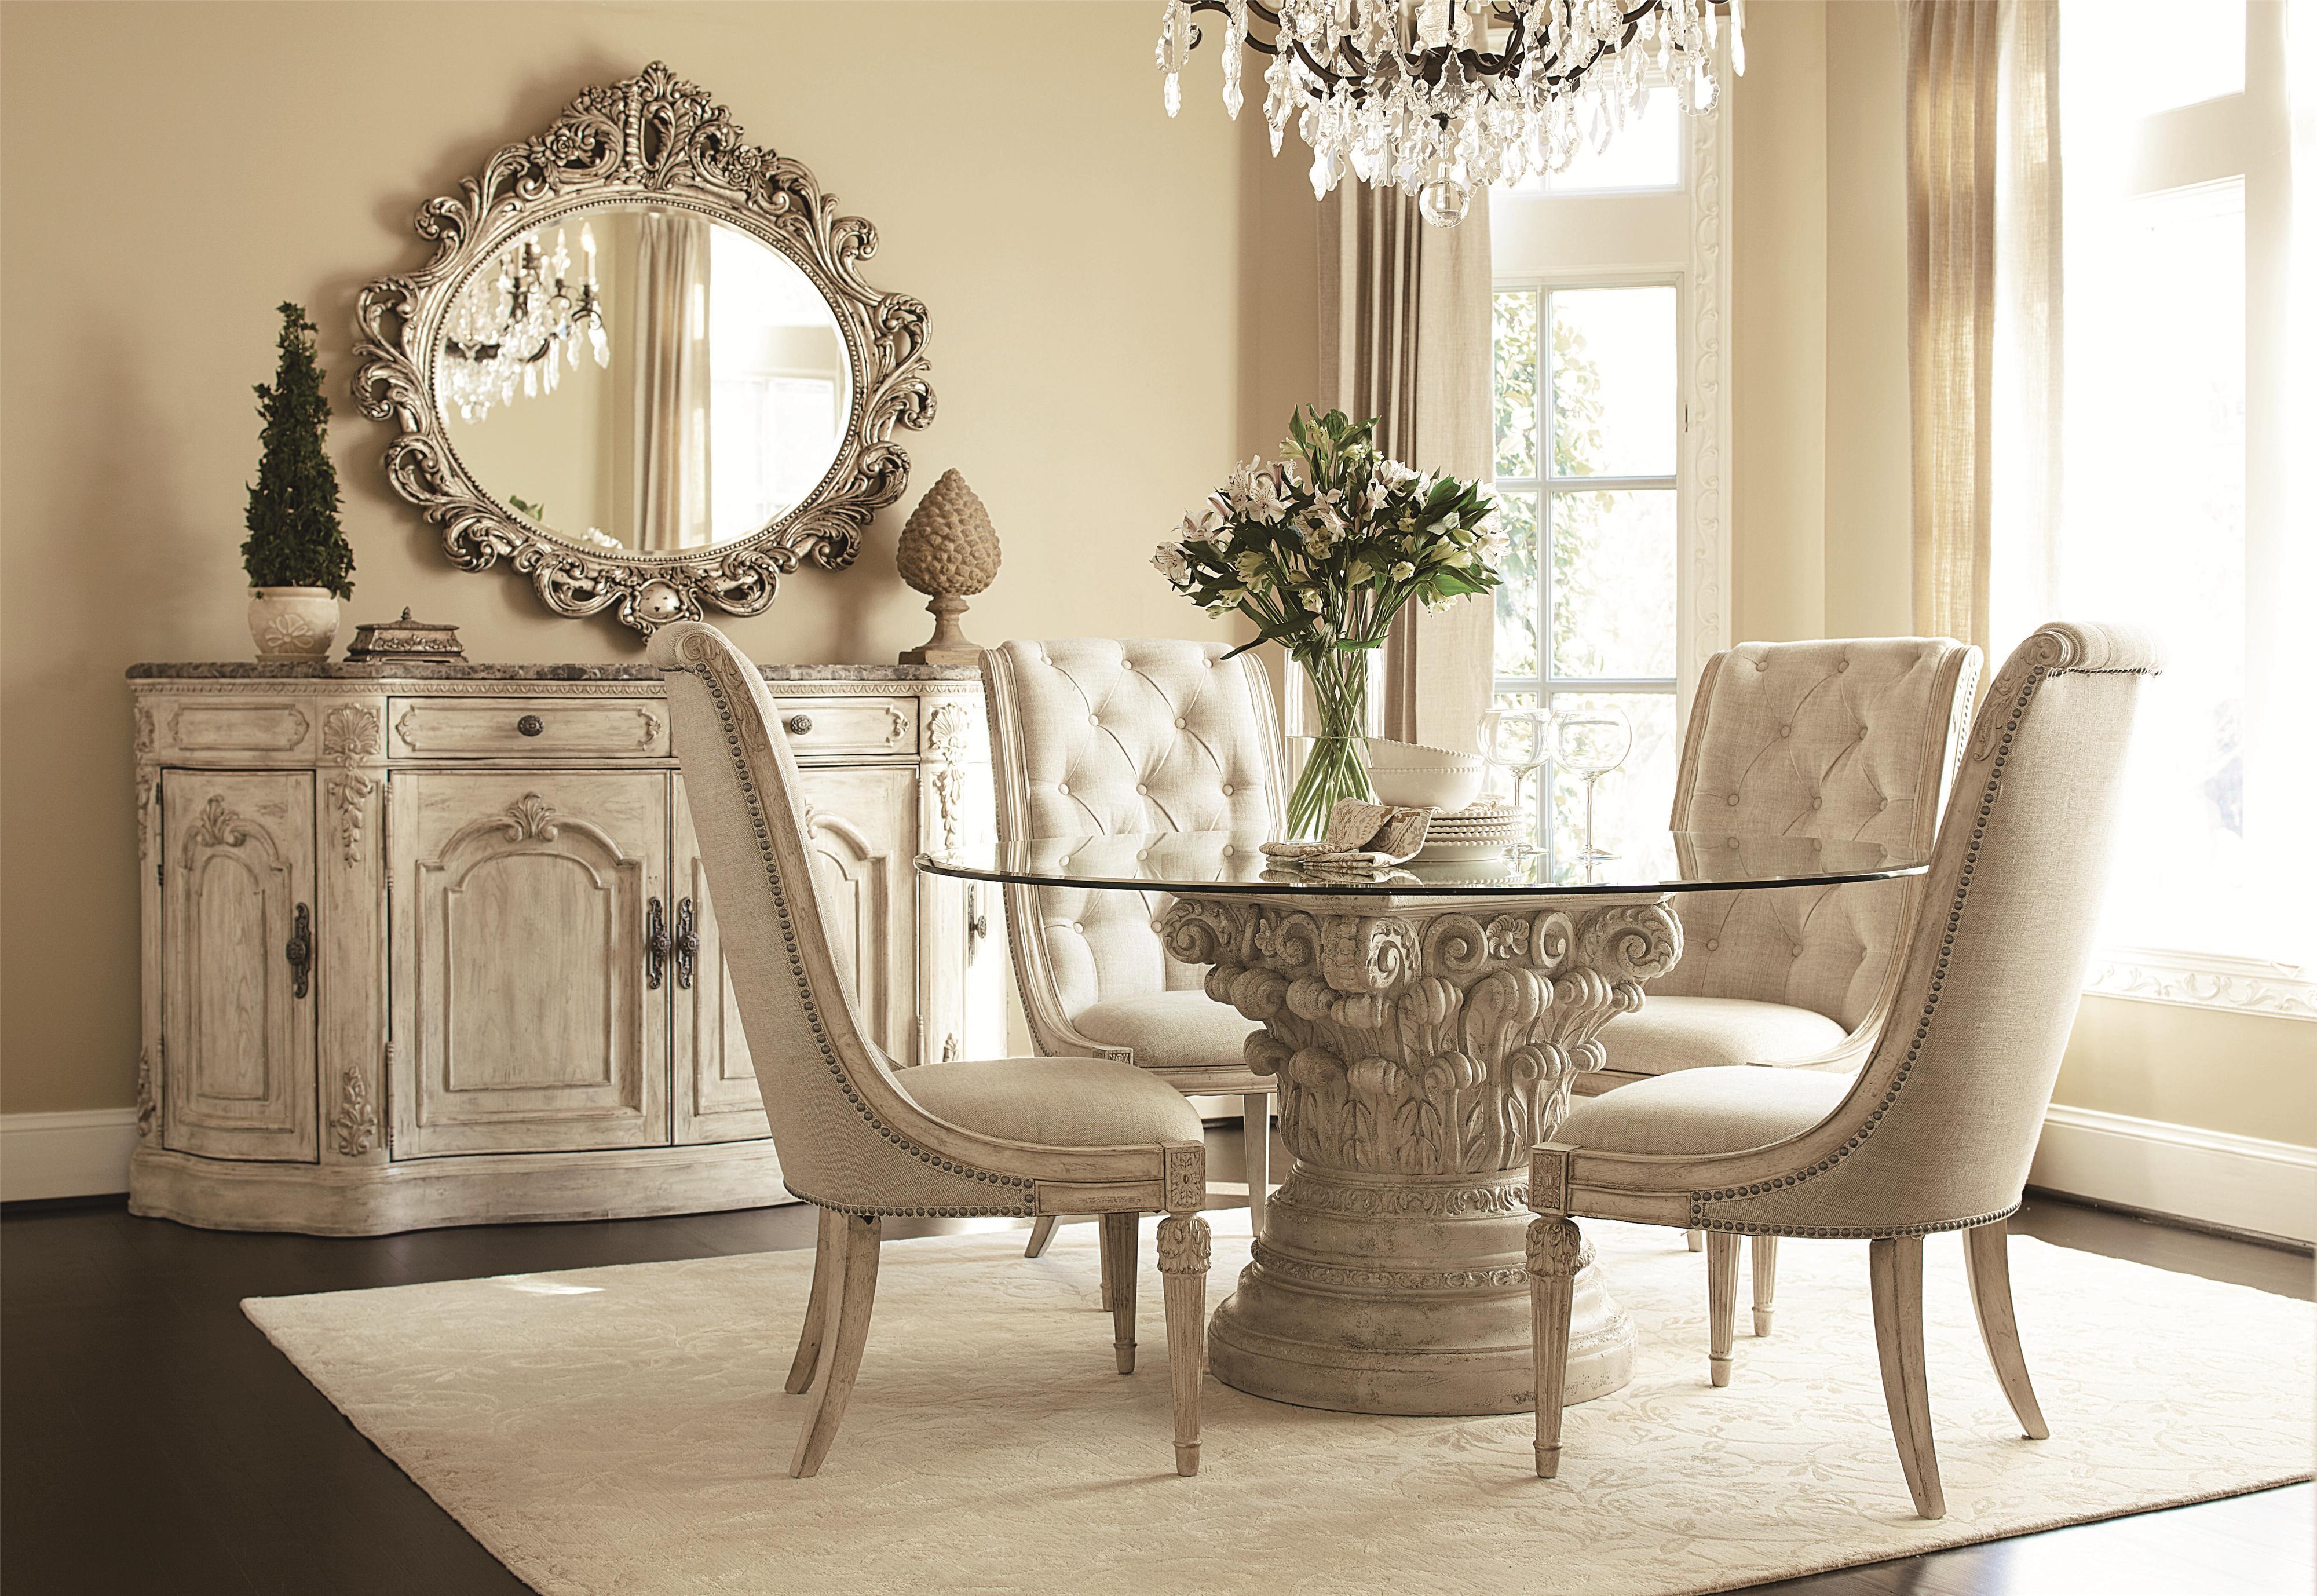 Фото стулья гостиной. Шикарные стулья для гостиной. Предметы интерьера в классическом стиле. Стол и стулья для гостиной в классическом стиле. Красивый столик в гостиную.